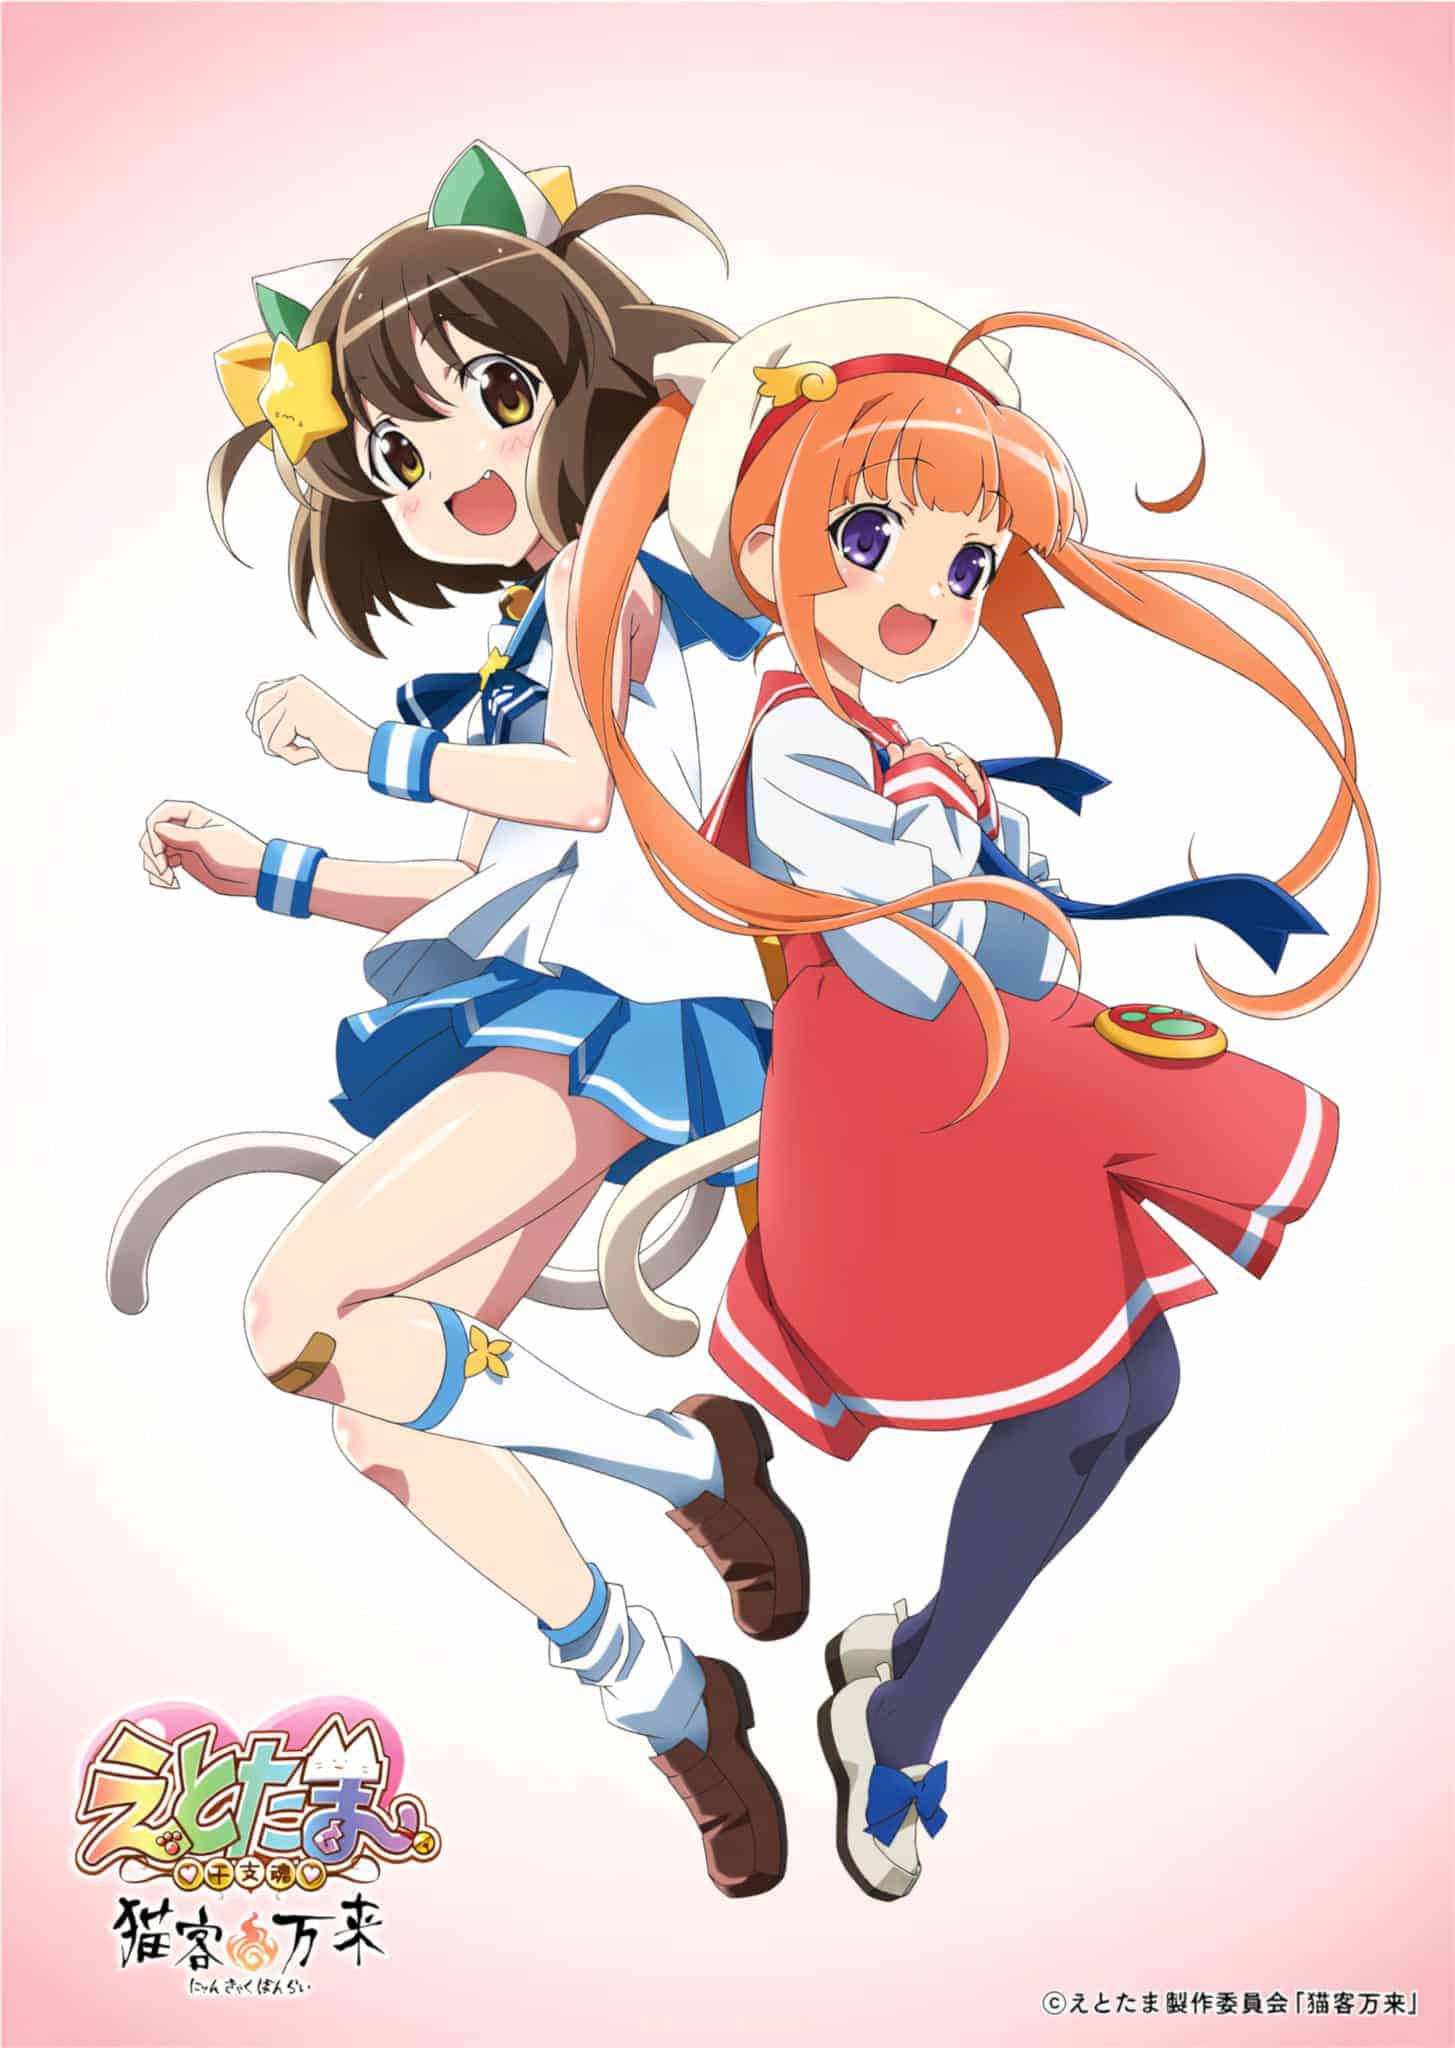 Annonce de Etotama Nyan Kyaku Banrai parmi les animes du printemps 2021